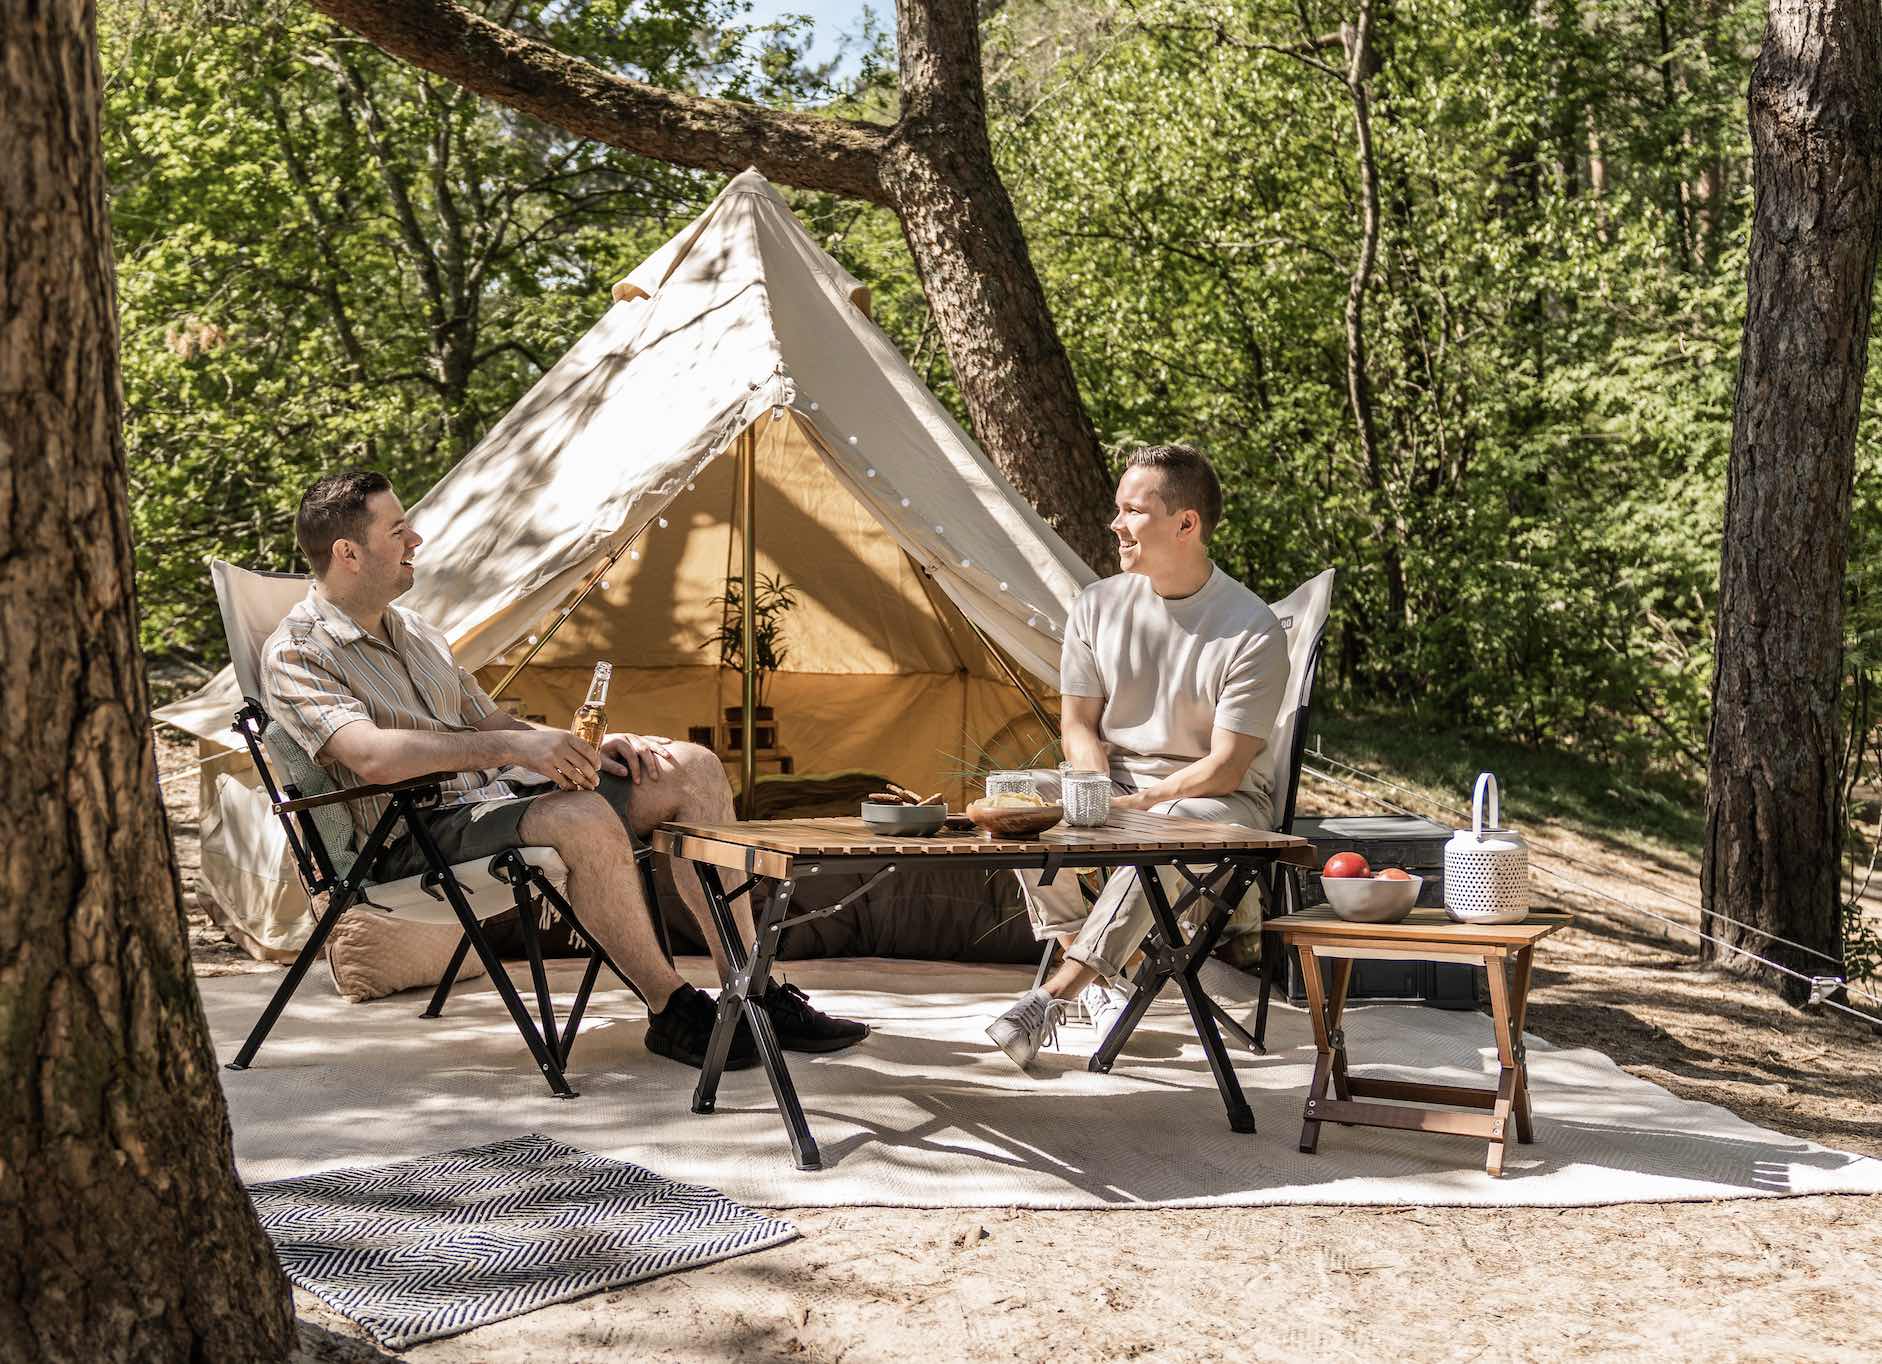 Kaal Hulpeloosheid In de omgeving van Thuis op de camping met de Go-collectie van Travellife - Campingtrend